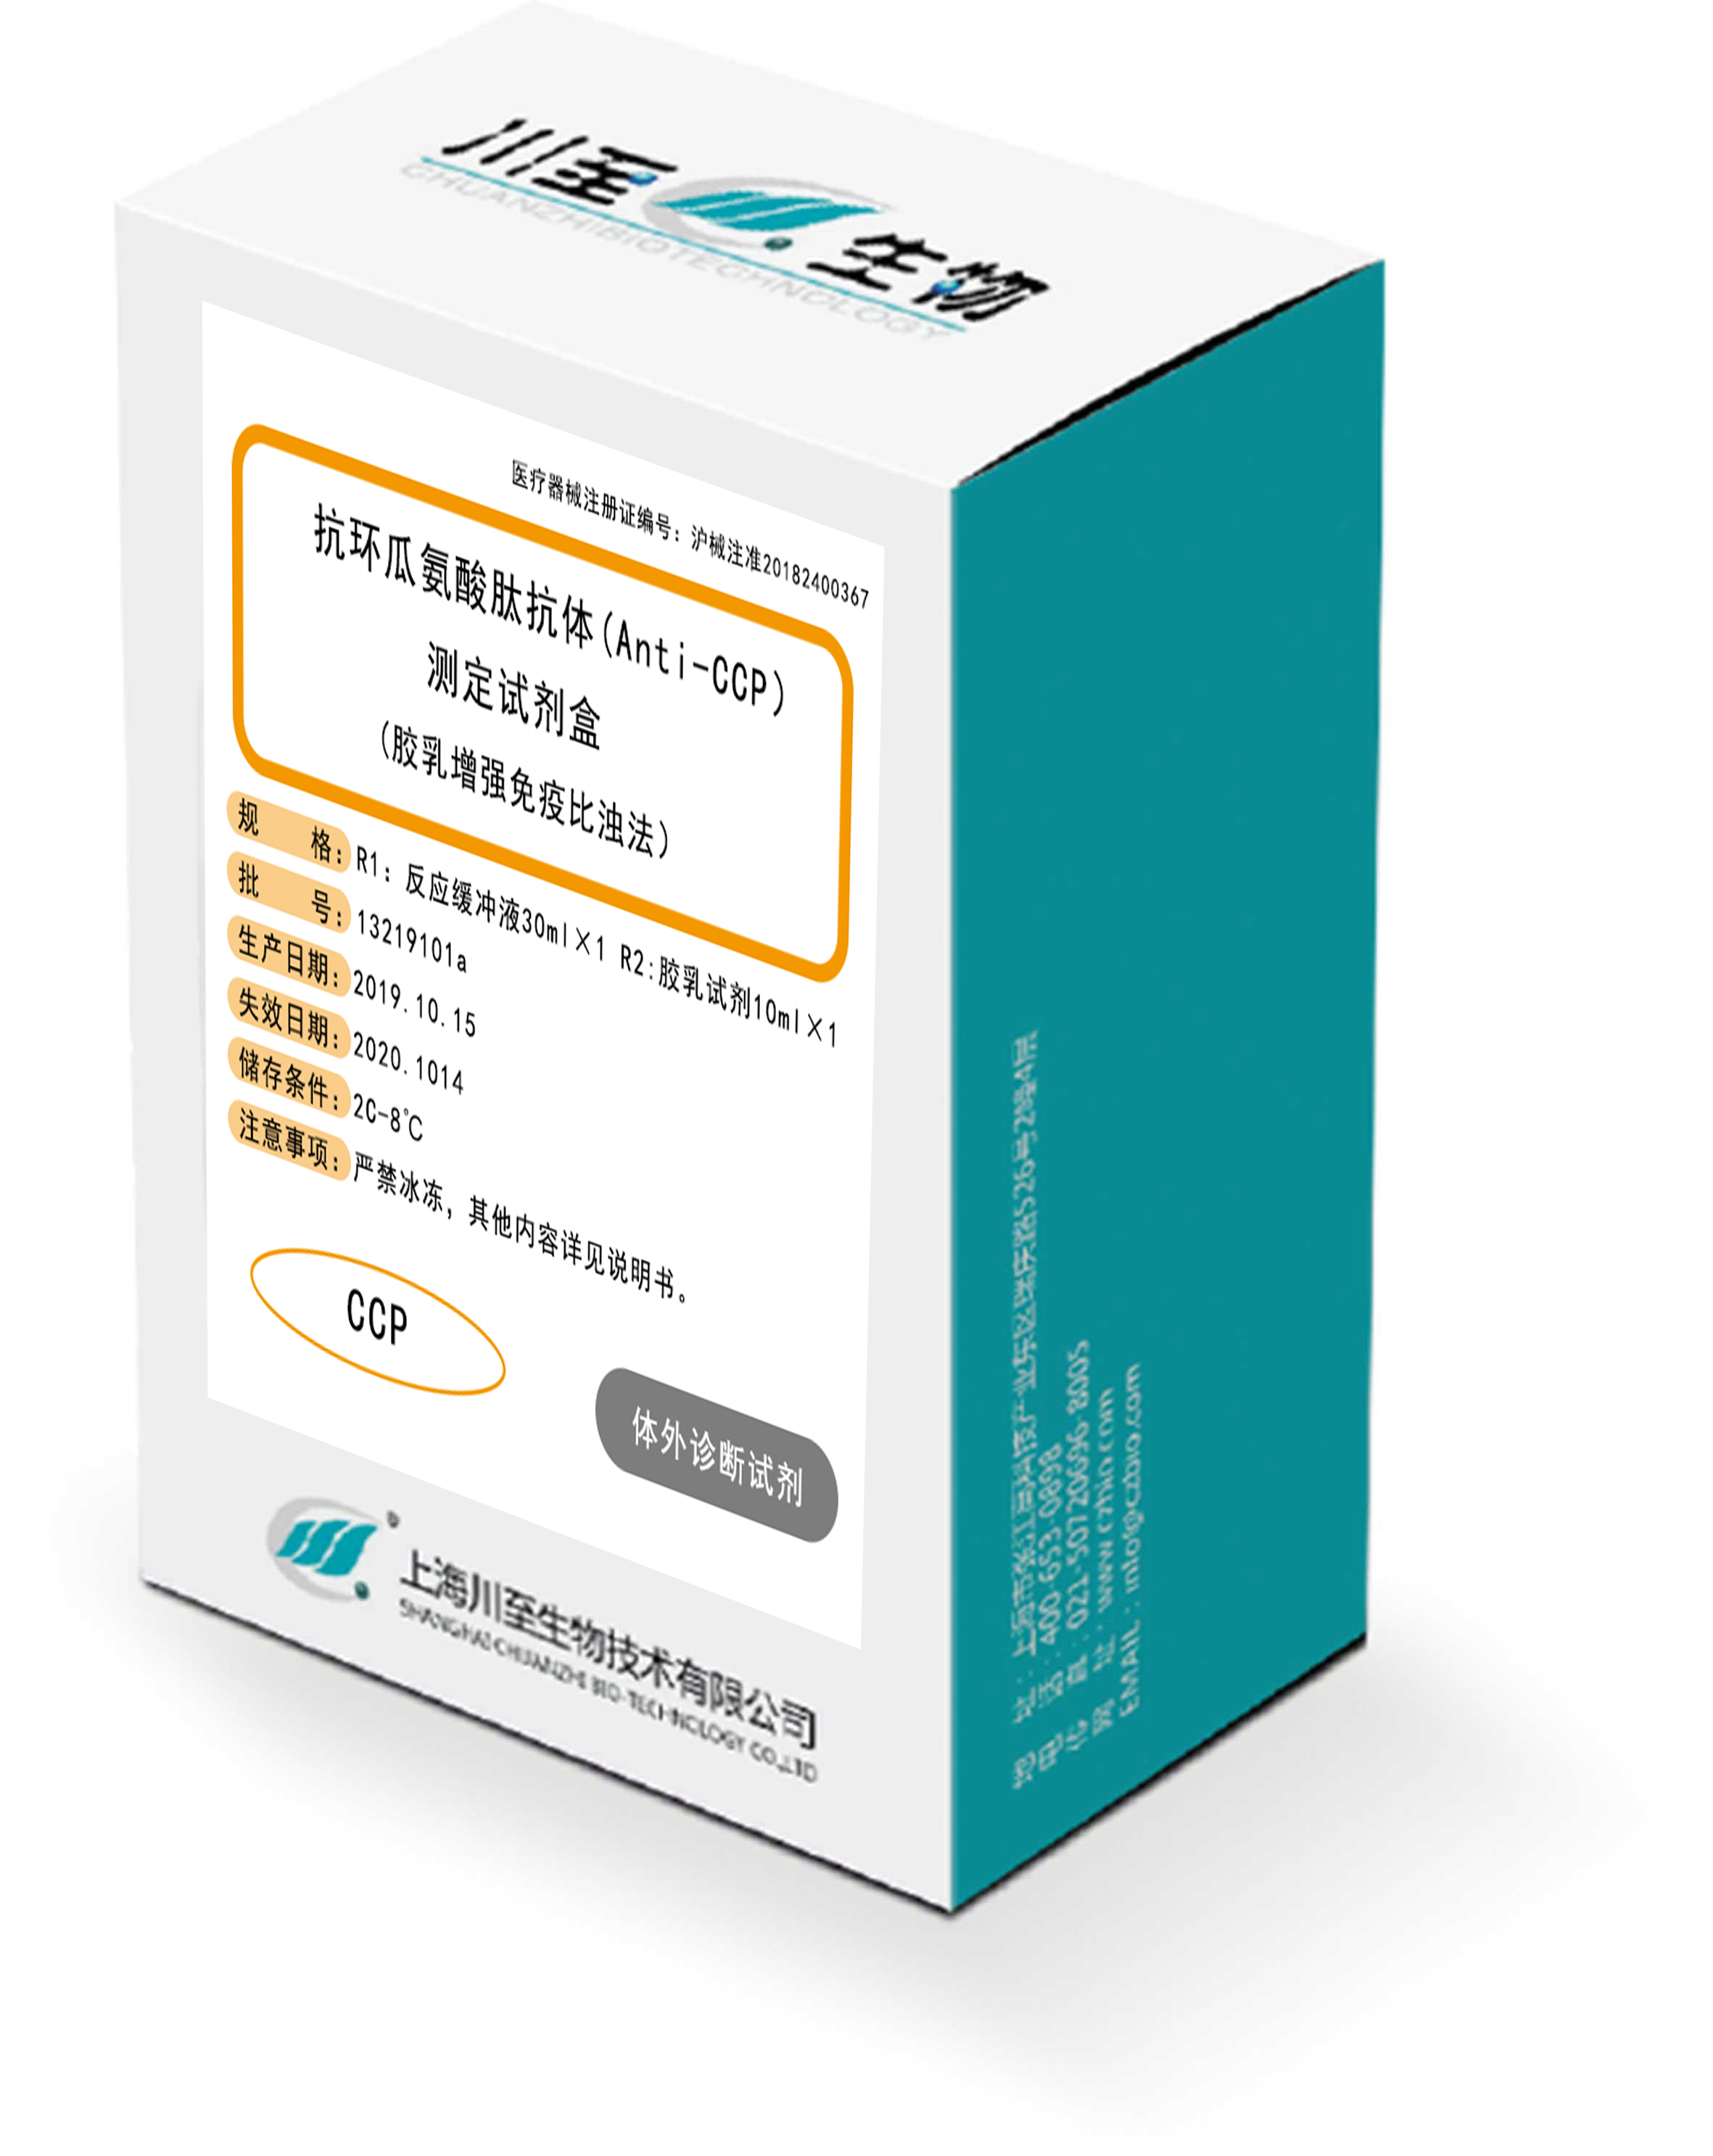 抗環瓜氨酸肽抗體（Anti-CCP）測定試劑盒